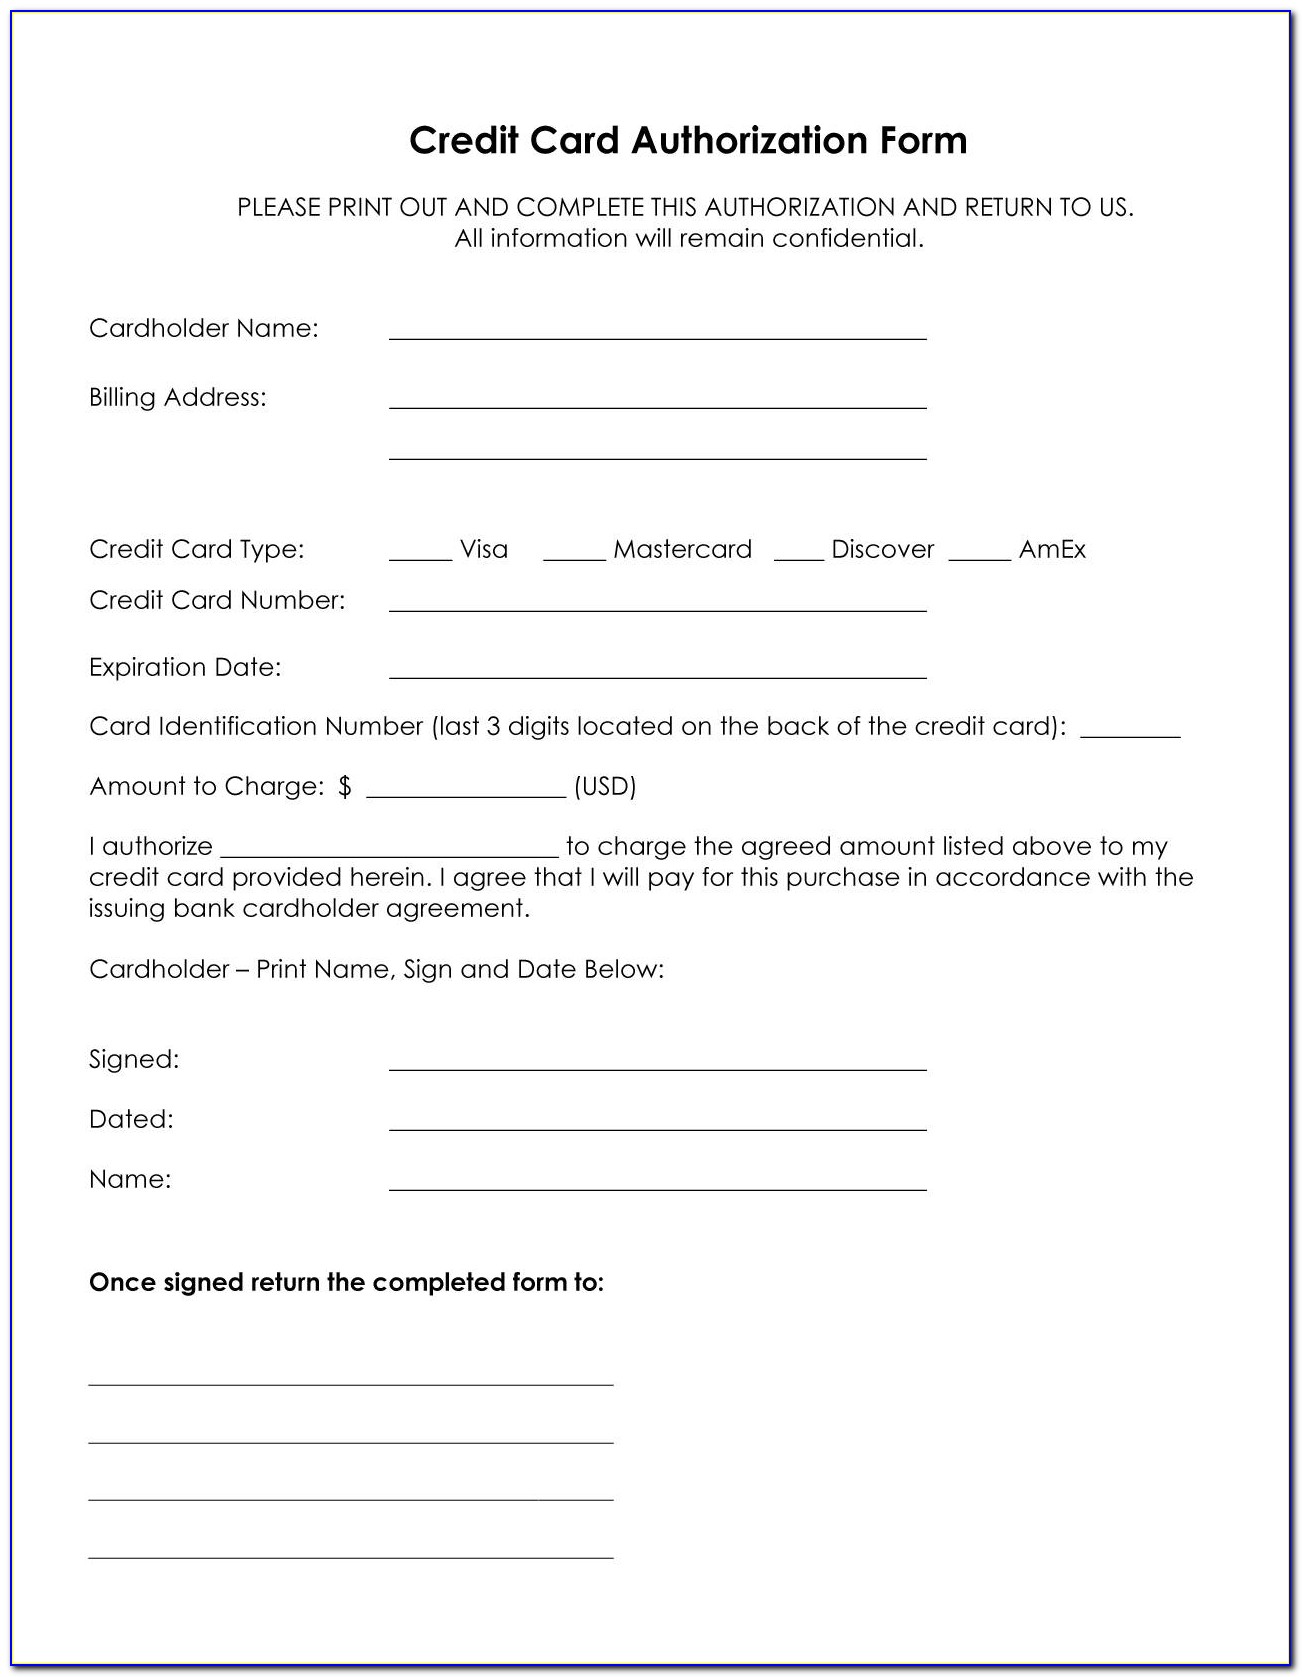 Etihad Airways Vendor Registration Form